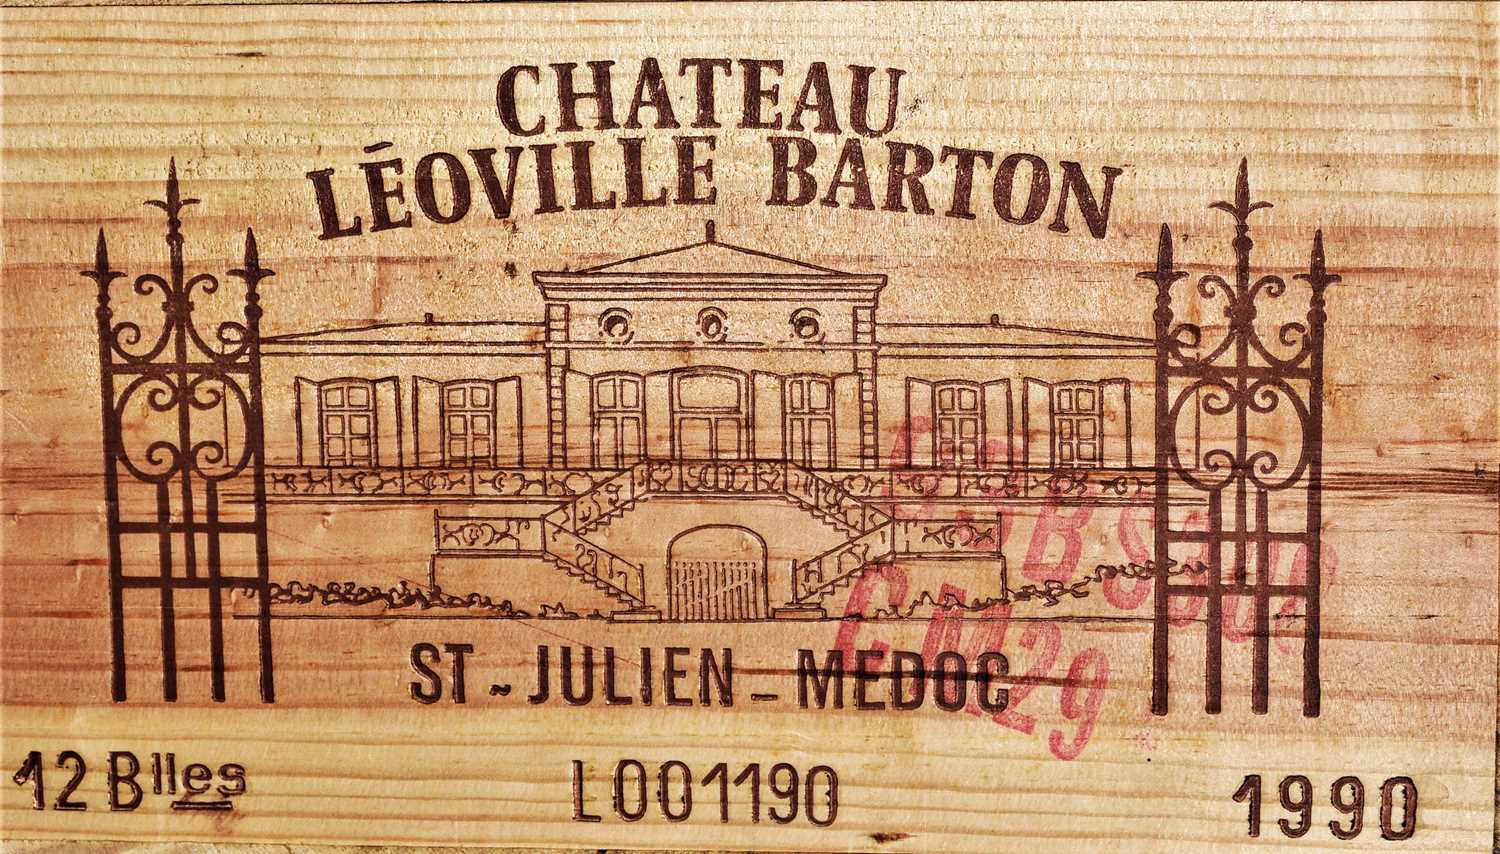 266 - Chateau Leoville Barton 1990